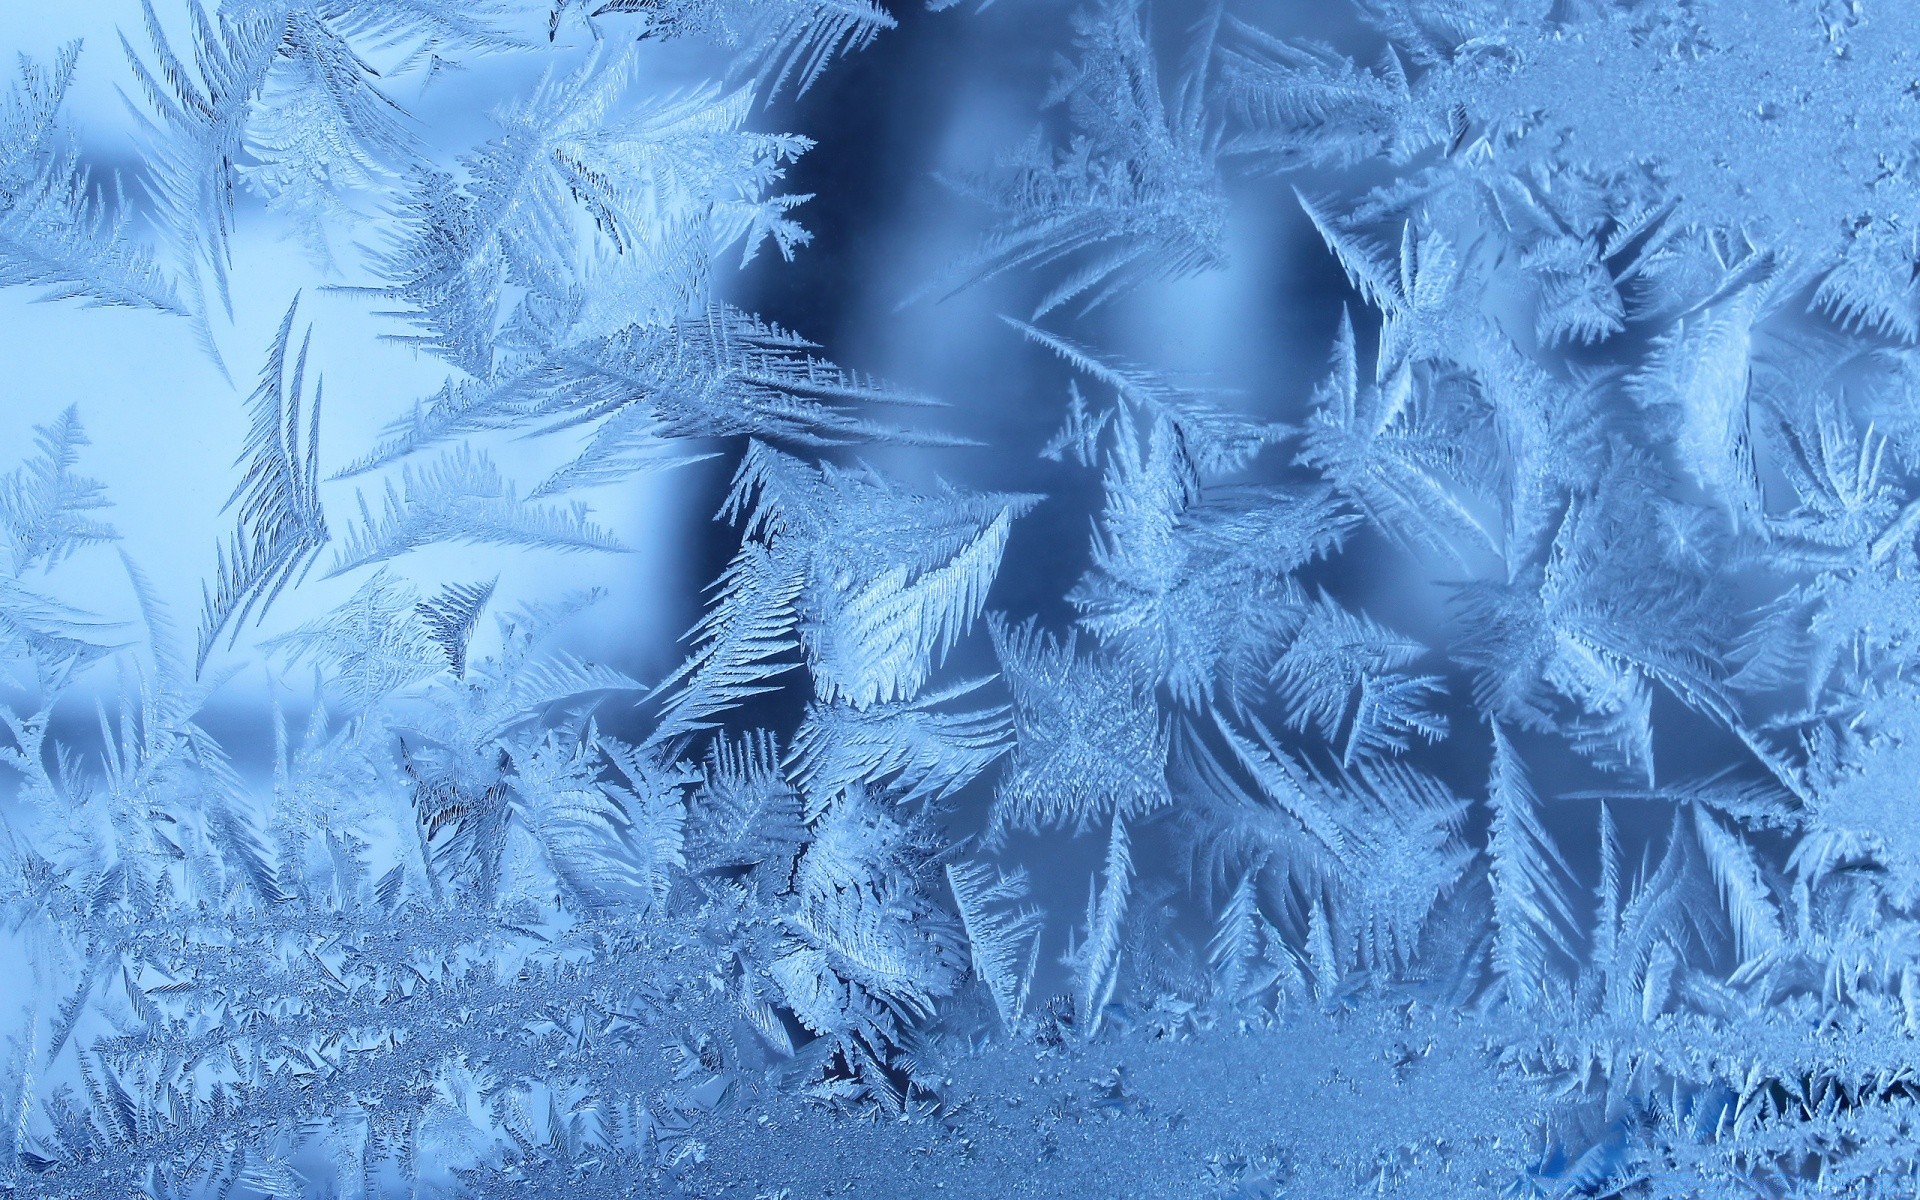 зима мороз рабочего стола аннотация искусство снег холодная дизайн обои шаблон текстура бумага художественный морозный рождество природа свет фон график